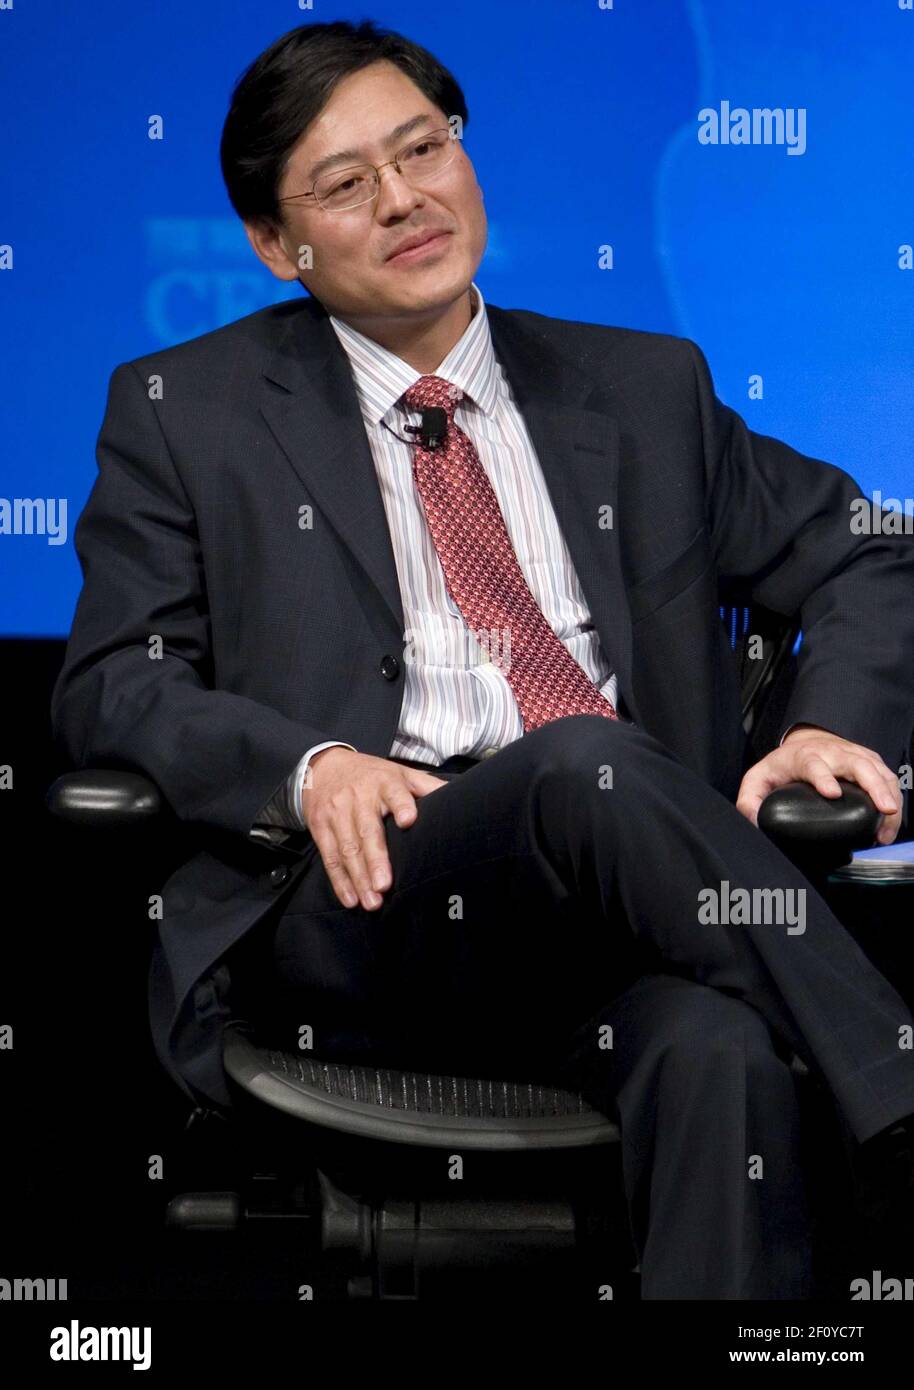 18 novembre 2008 - Washington, D.C. - Yang Yuanqing, Président de Lenovo. Crédit photo: Kristoffer Tripplaar/ Sipa Press/0811232020 Banque D'Images